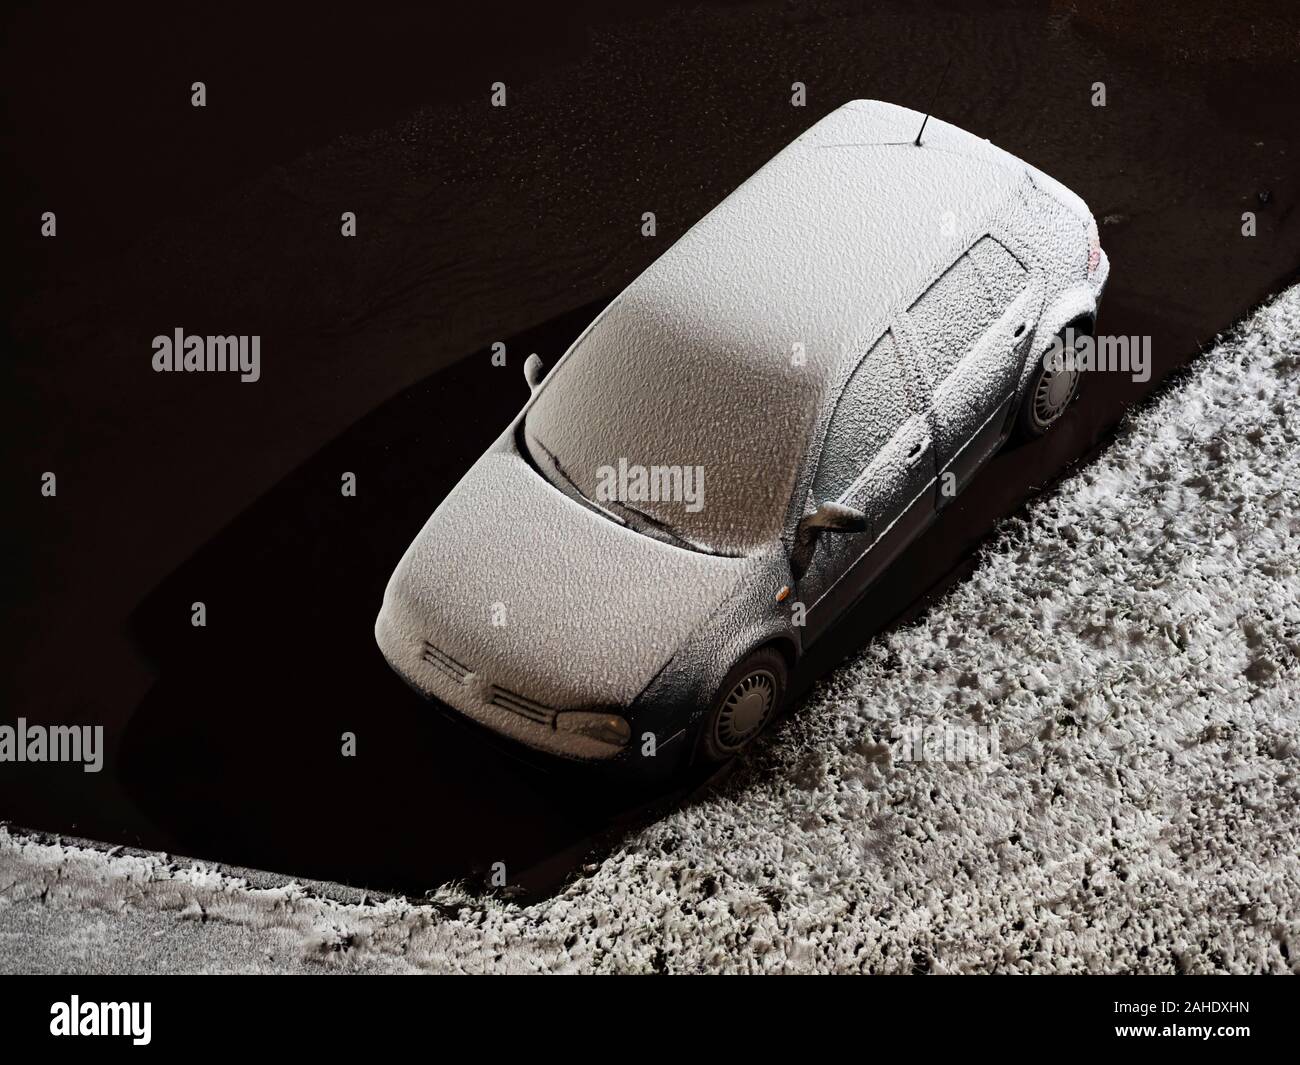 Une voiture couverte de neige fraîchement tombée se trouve dans une flaque d'eau près d'une pelouse couverte de neige Banque D'Images